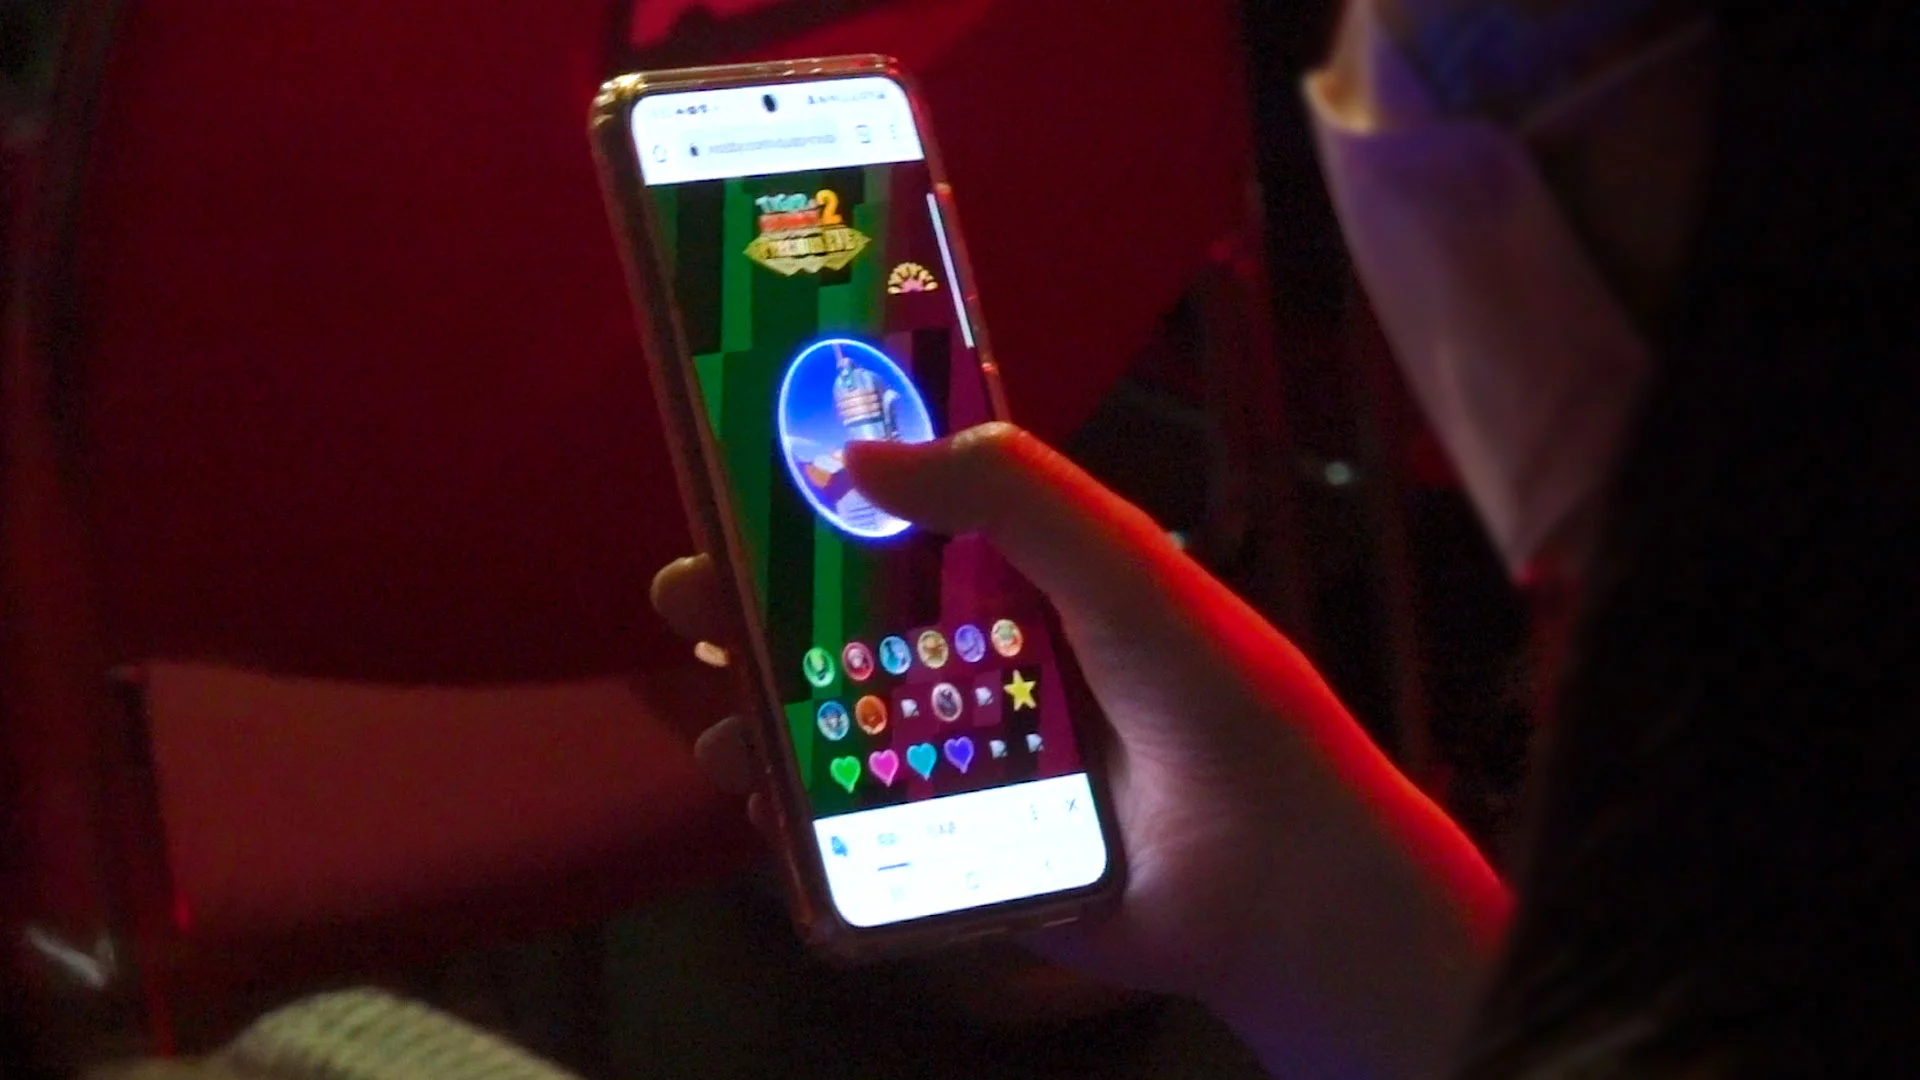 スマートフォンを持つ観客の手と、Visibbyのスタンプ画面には「Tiger & Bunny」のキャラクタースタンプが表示されている。